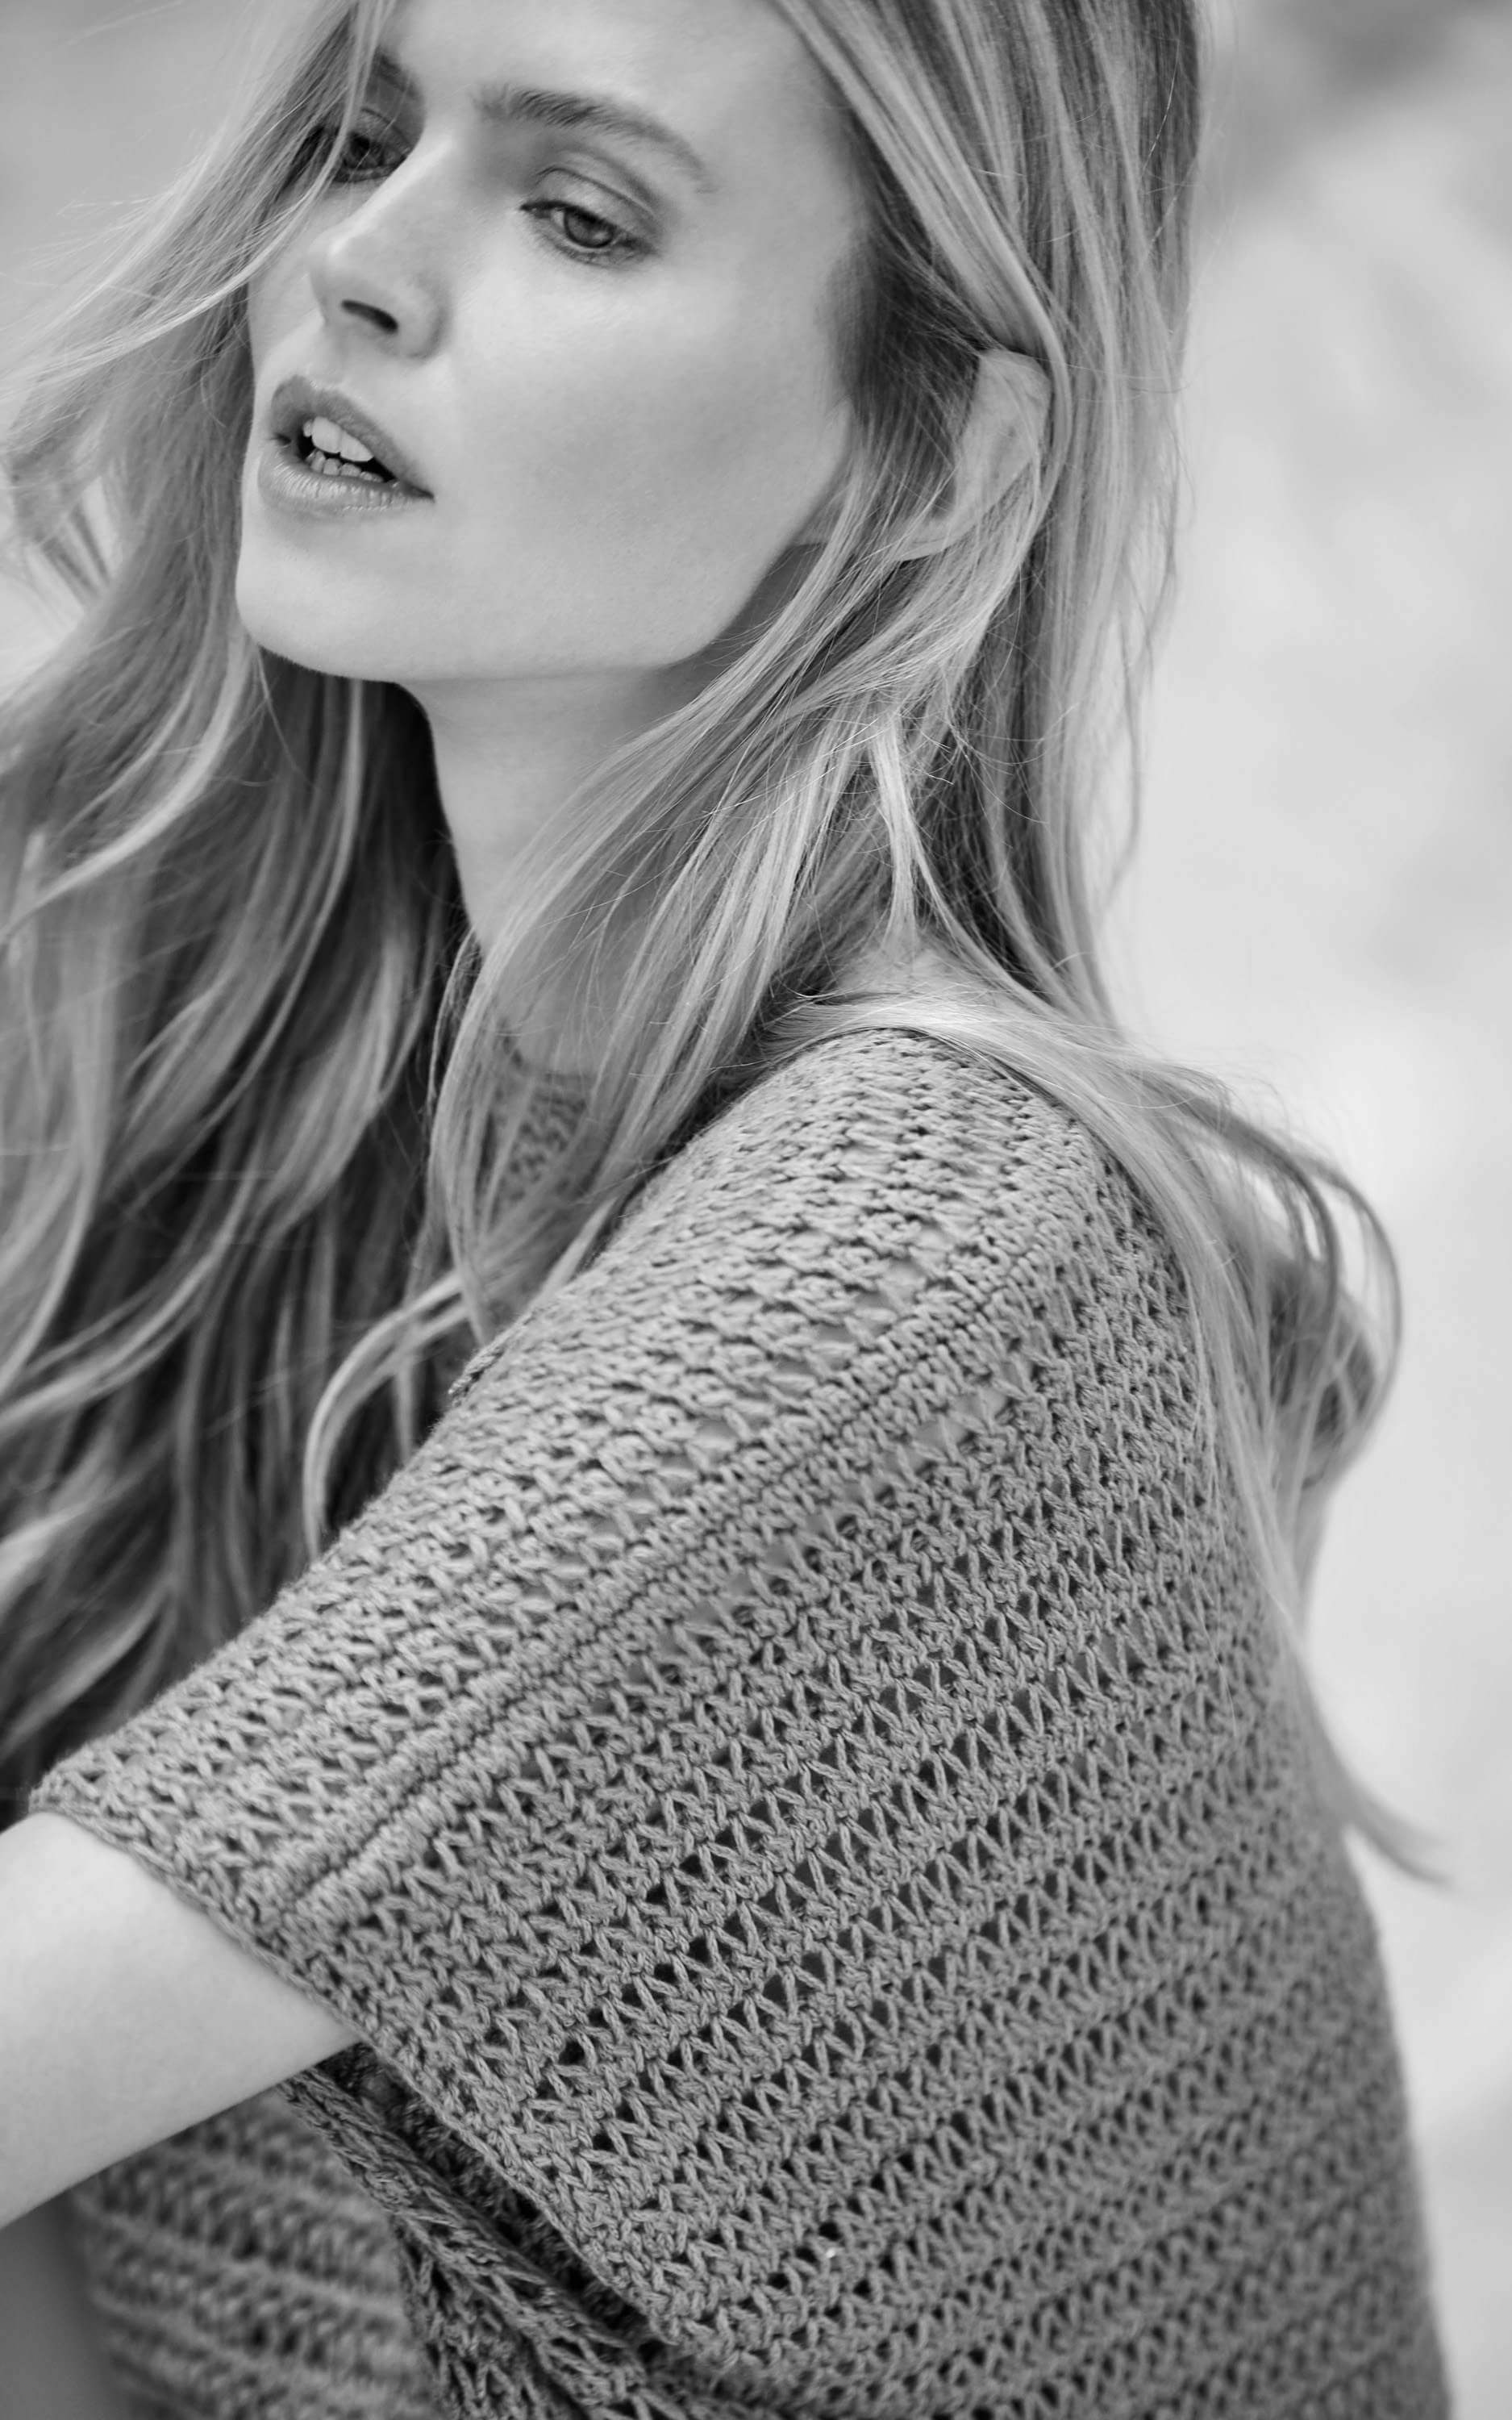 Ärmelloser Pullover mit Netzmuster - Strickset von LANA GROSSA jetzt online kaufen bei OONIQUE